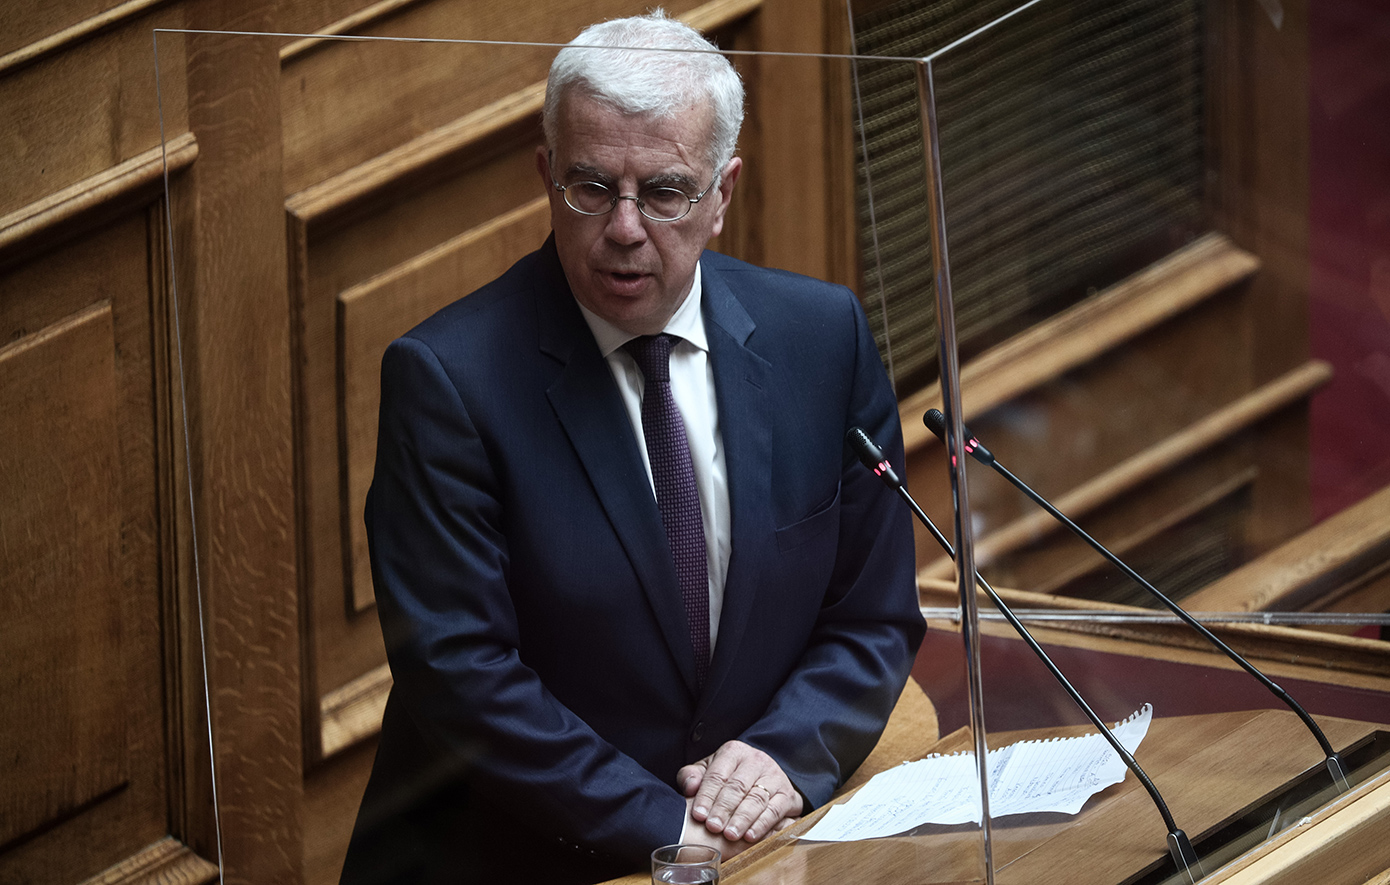 Σιμόπουλος: Όχι στην ποινική δίωξη υπουργών χωρίς ενδείξεις για δόλο